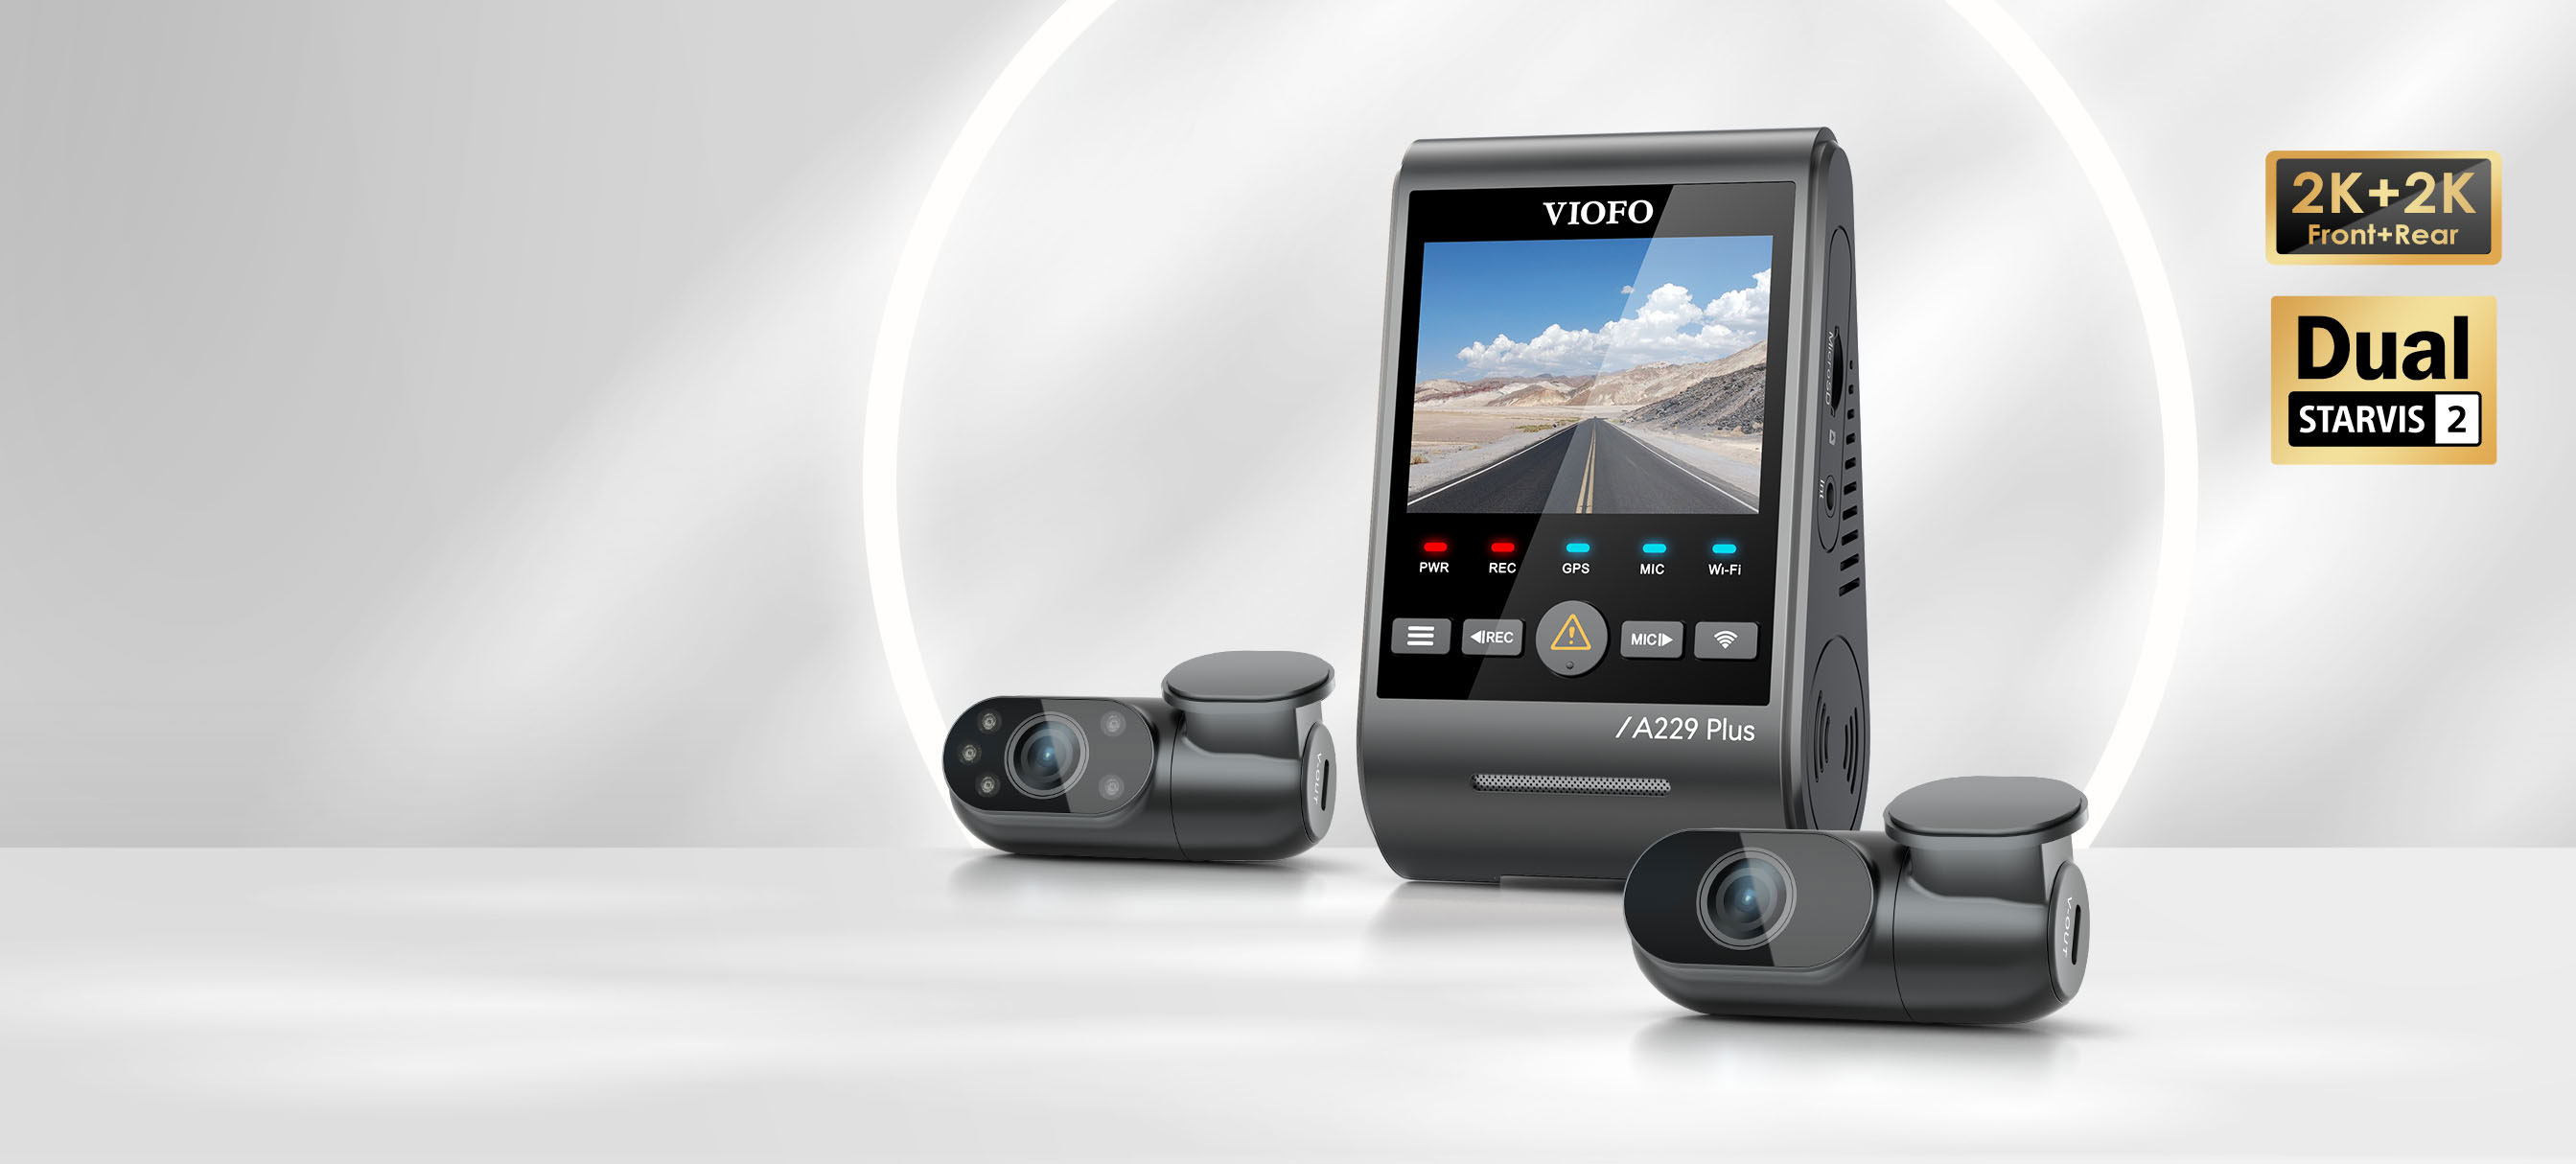 VIOFO Dash Cams, Best Video Quality Dash Cam